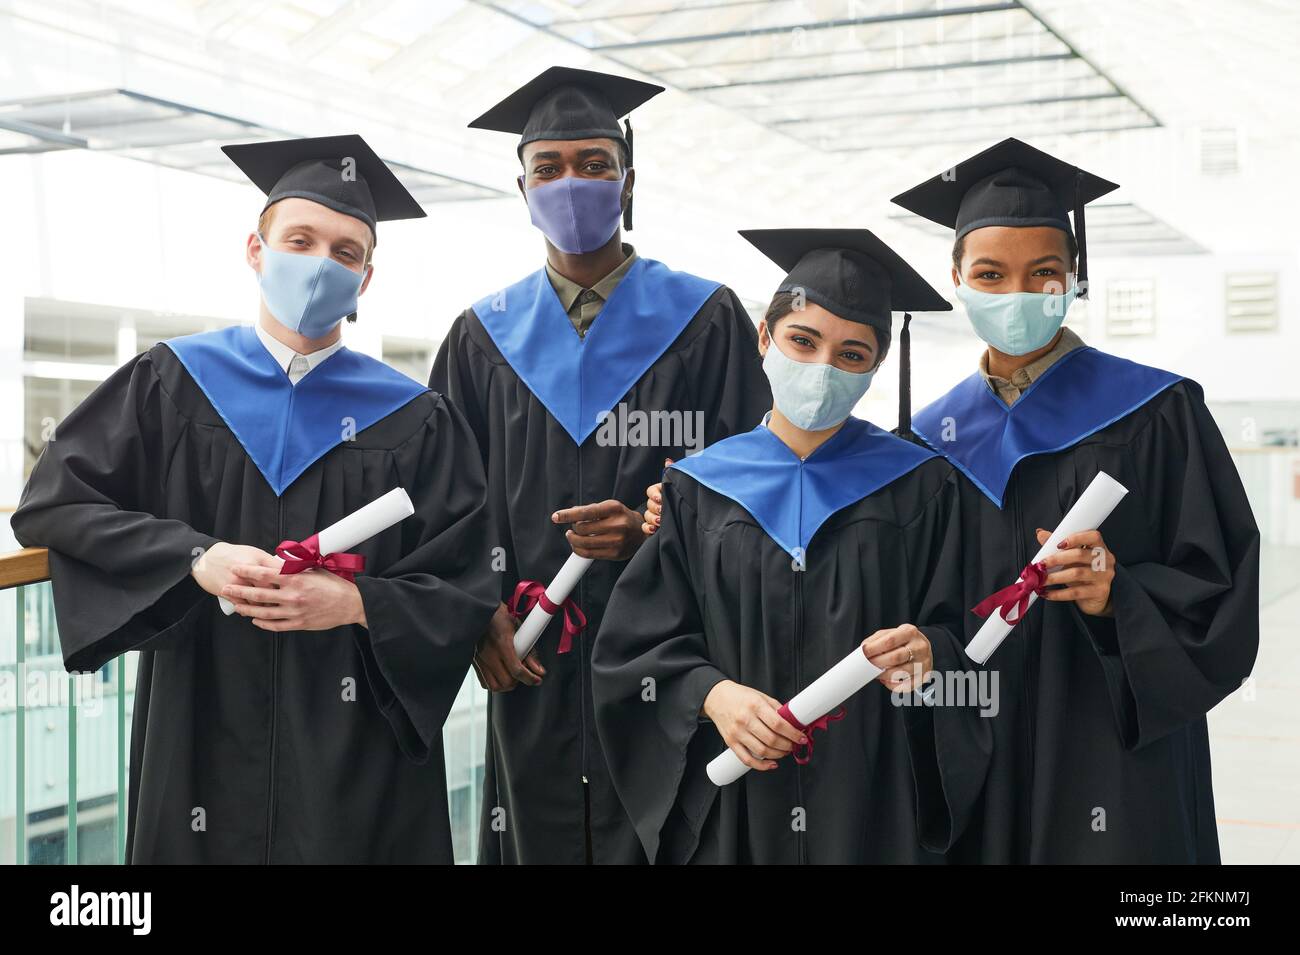 Groupe diversifié de jeunes portant des robes et des masques de remise des diplômes en posant à l'intérieur à l'intérieur de l'université Banque D'Images